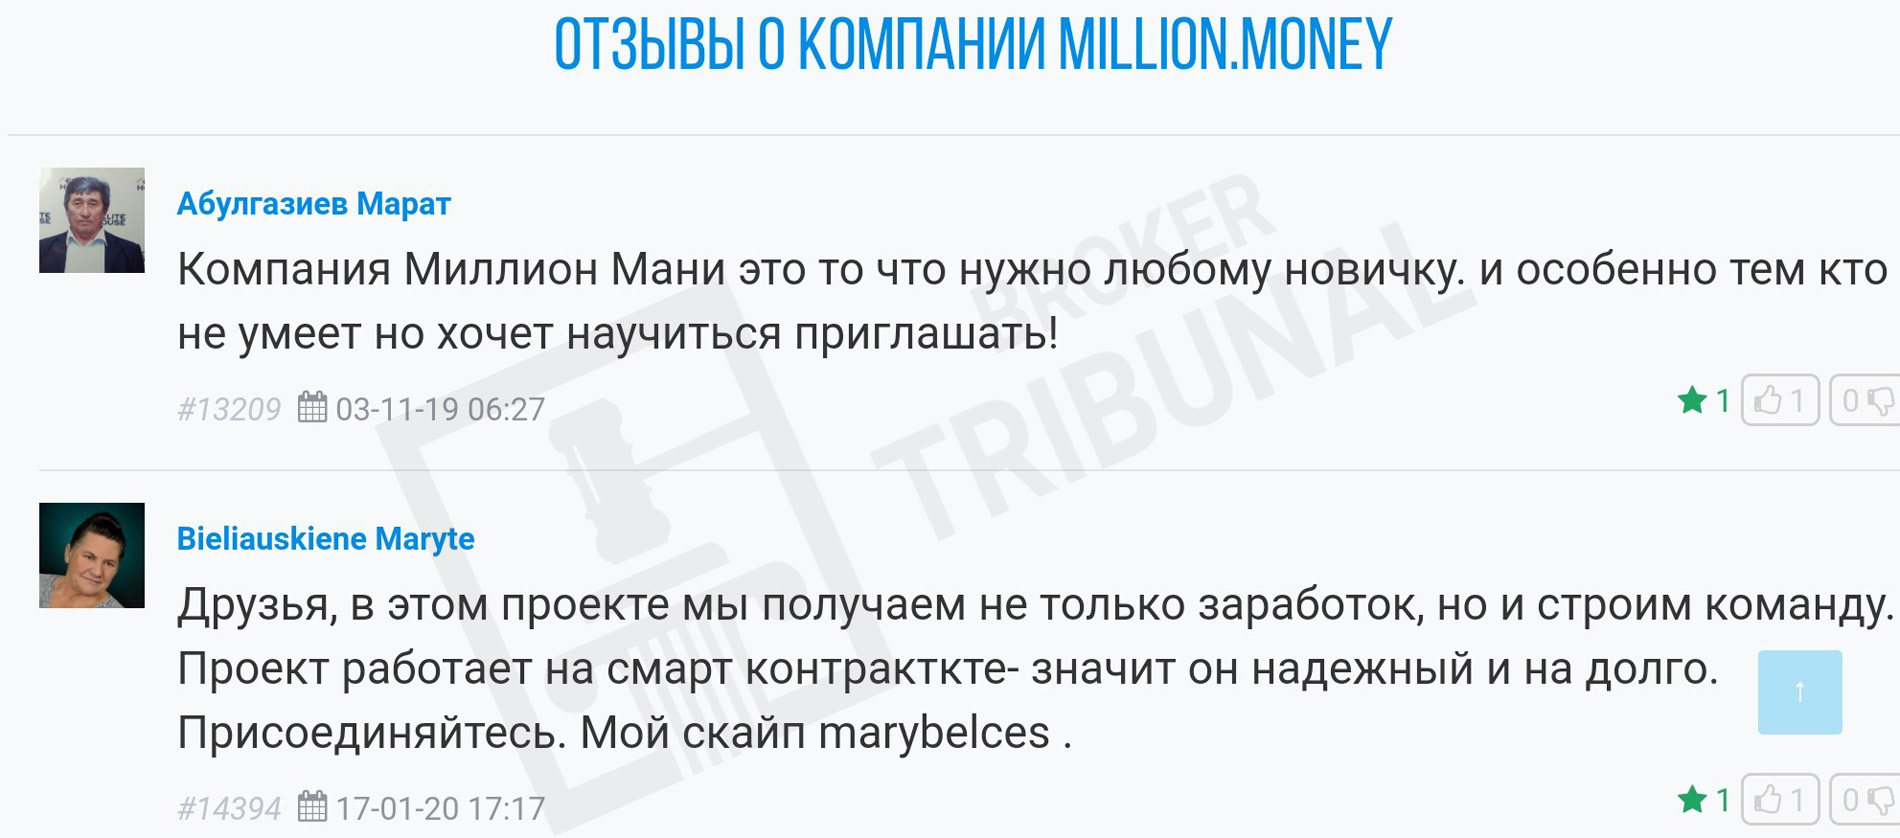 million money